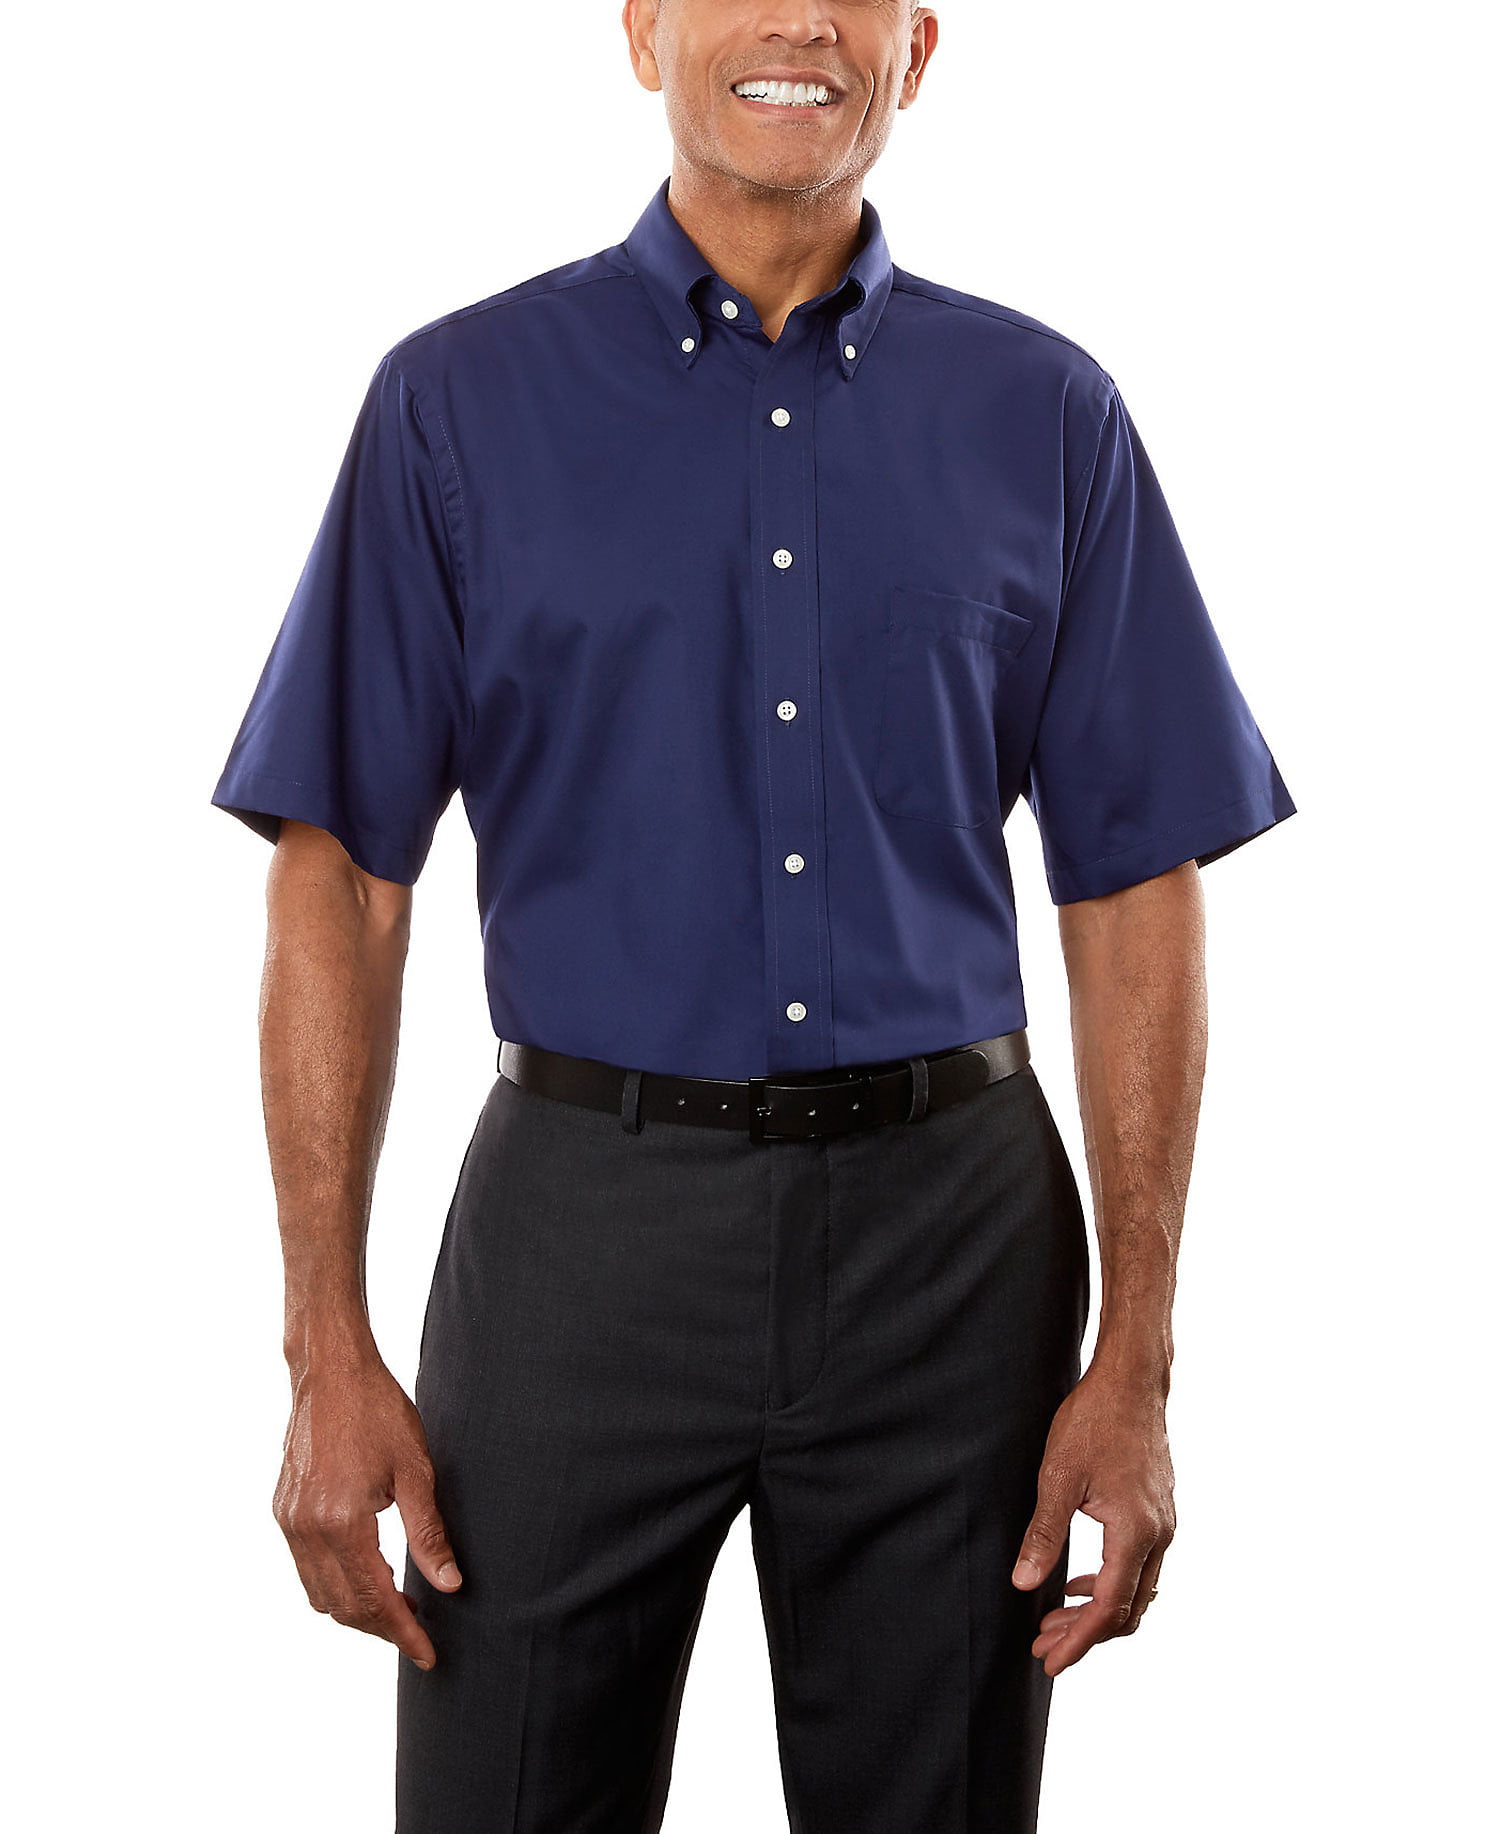 Van Heusen - Van Heusen Men's Twill Short Sleeve Dress Shirt - Walmart ...